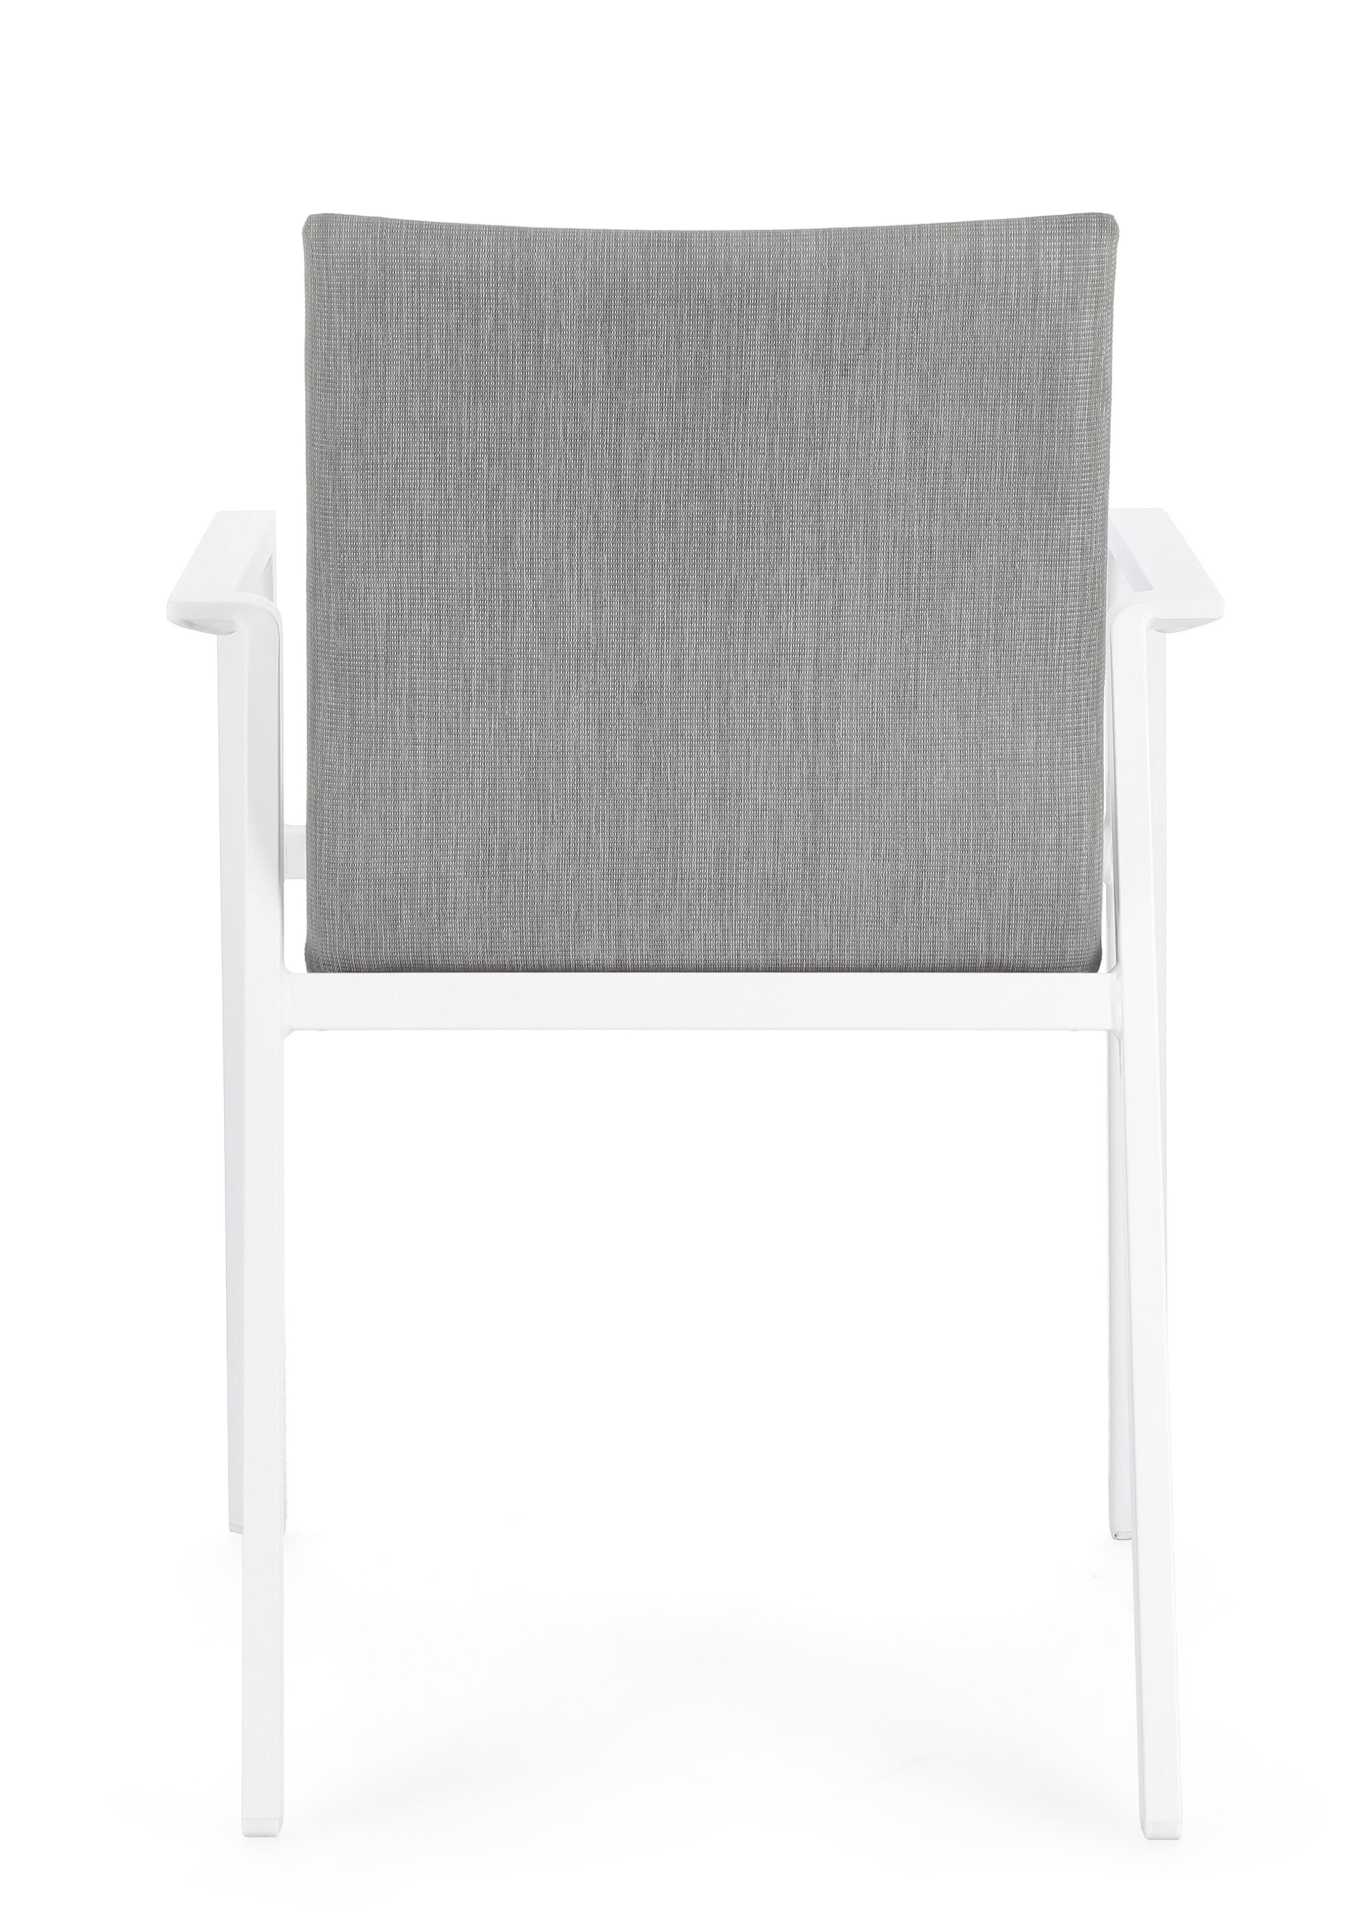 Der Gartenstuhl Odeon überzeugt mit seinem modernen Design. Gefertigt wurde er aus einem Mischstoff, welcher einen grauen Farbton besitzt. Das Gestell ist aus Aluminium und hat auch eine weiße Farbe. Der Stuhl verfügt über eine Sitzhöhe von 47 cm und ist 